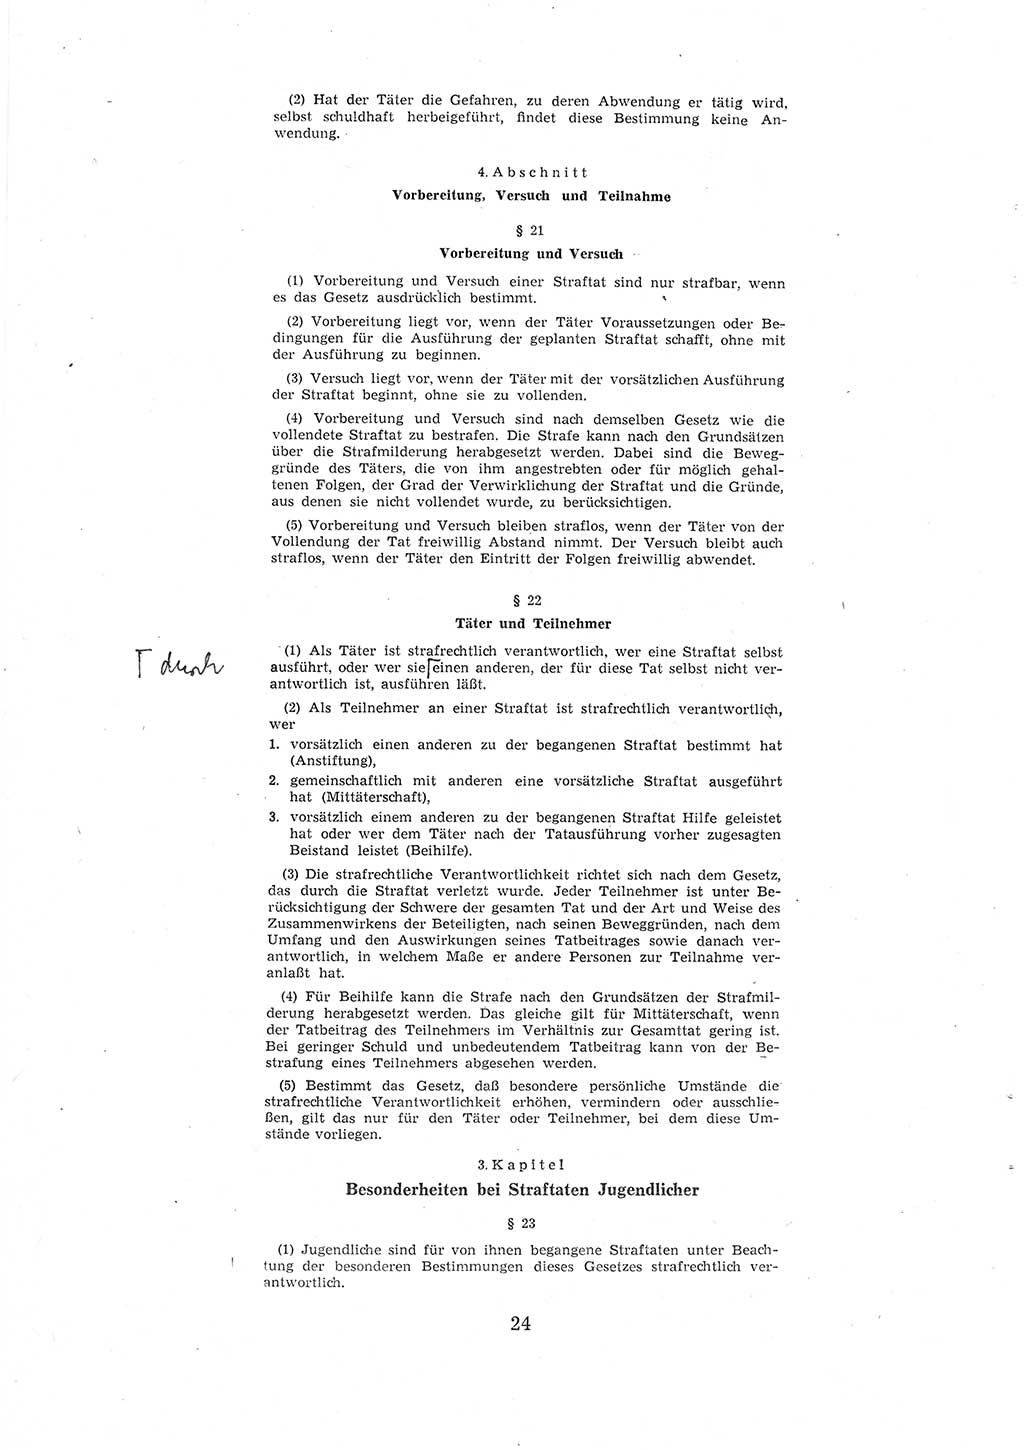 Entwurf des Strafgesetzbuches (StGB) der Deutschen Demokratischen Republik (DDR) 1967, Seite 24 (Entw. StGB DDR 1967, S. 24)